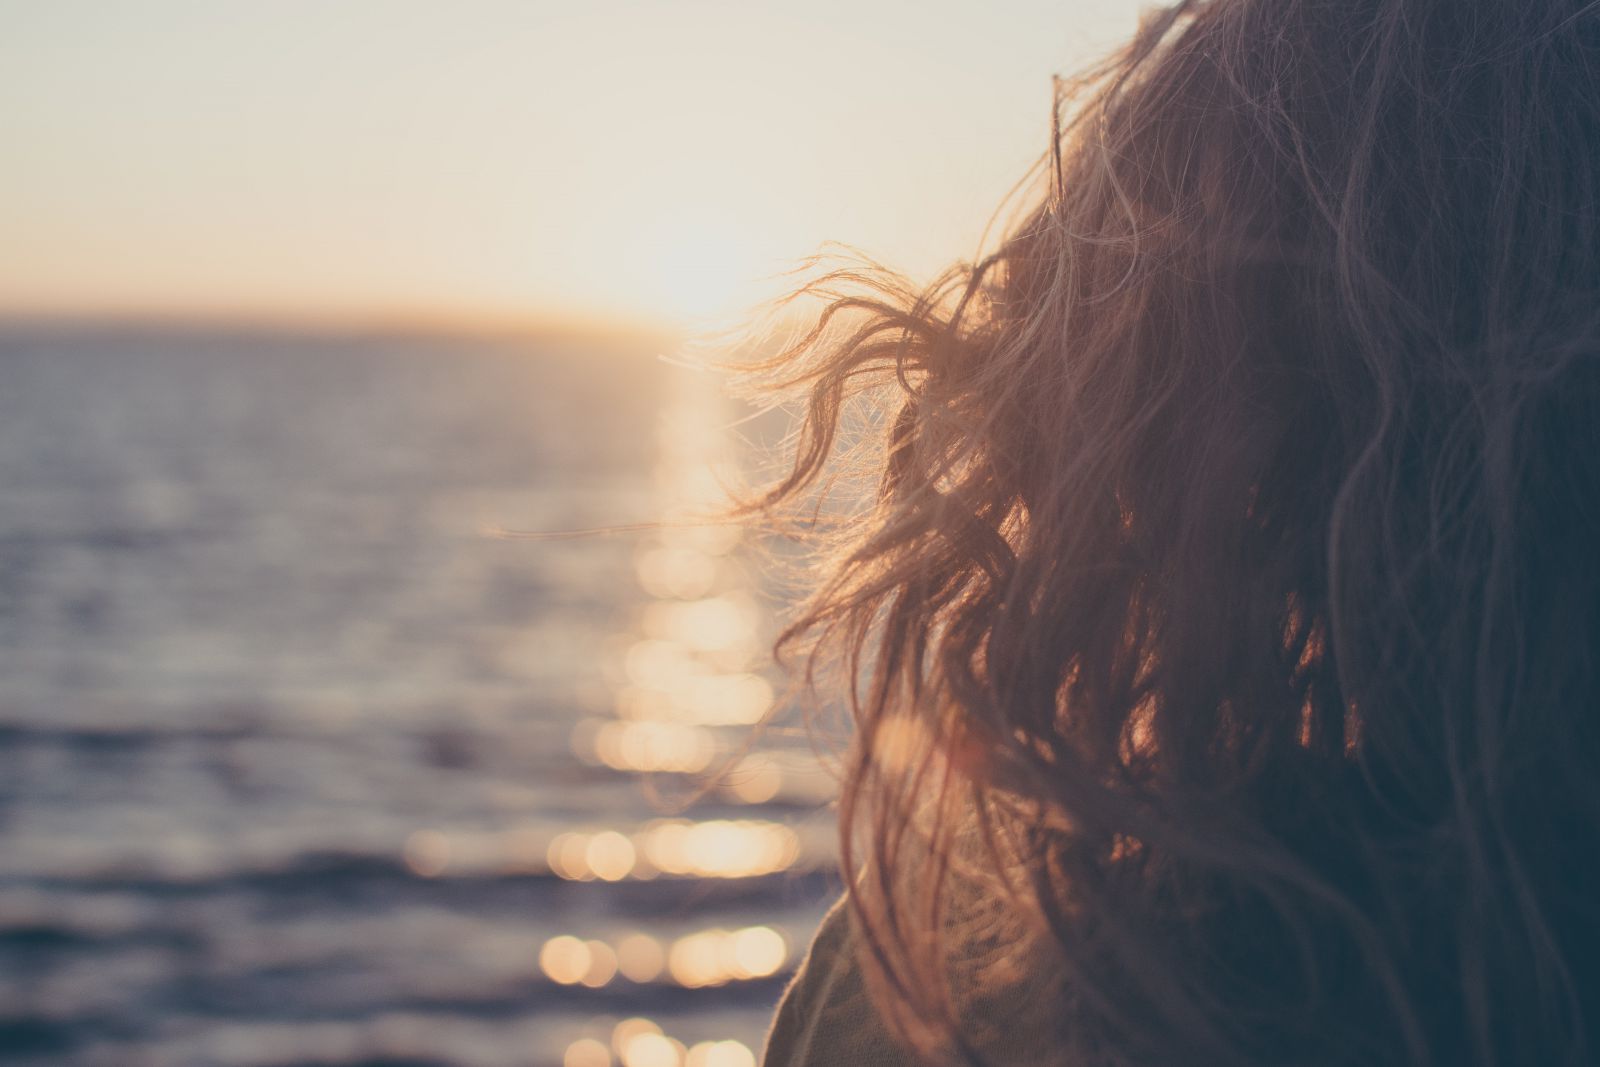 Imagem ampliada de uma mulher olhando para o horizonte, em frente ao mar.